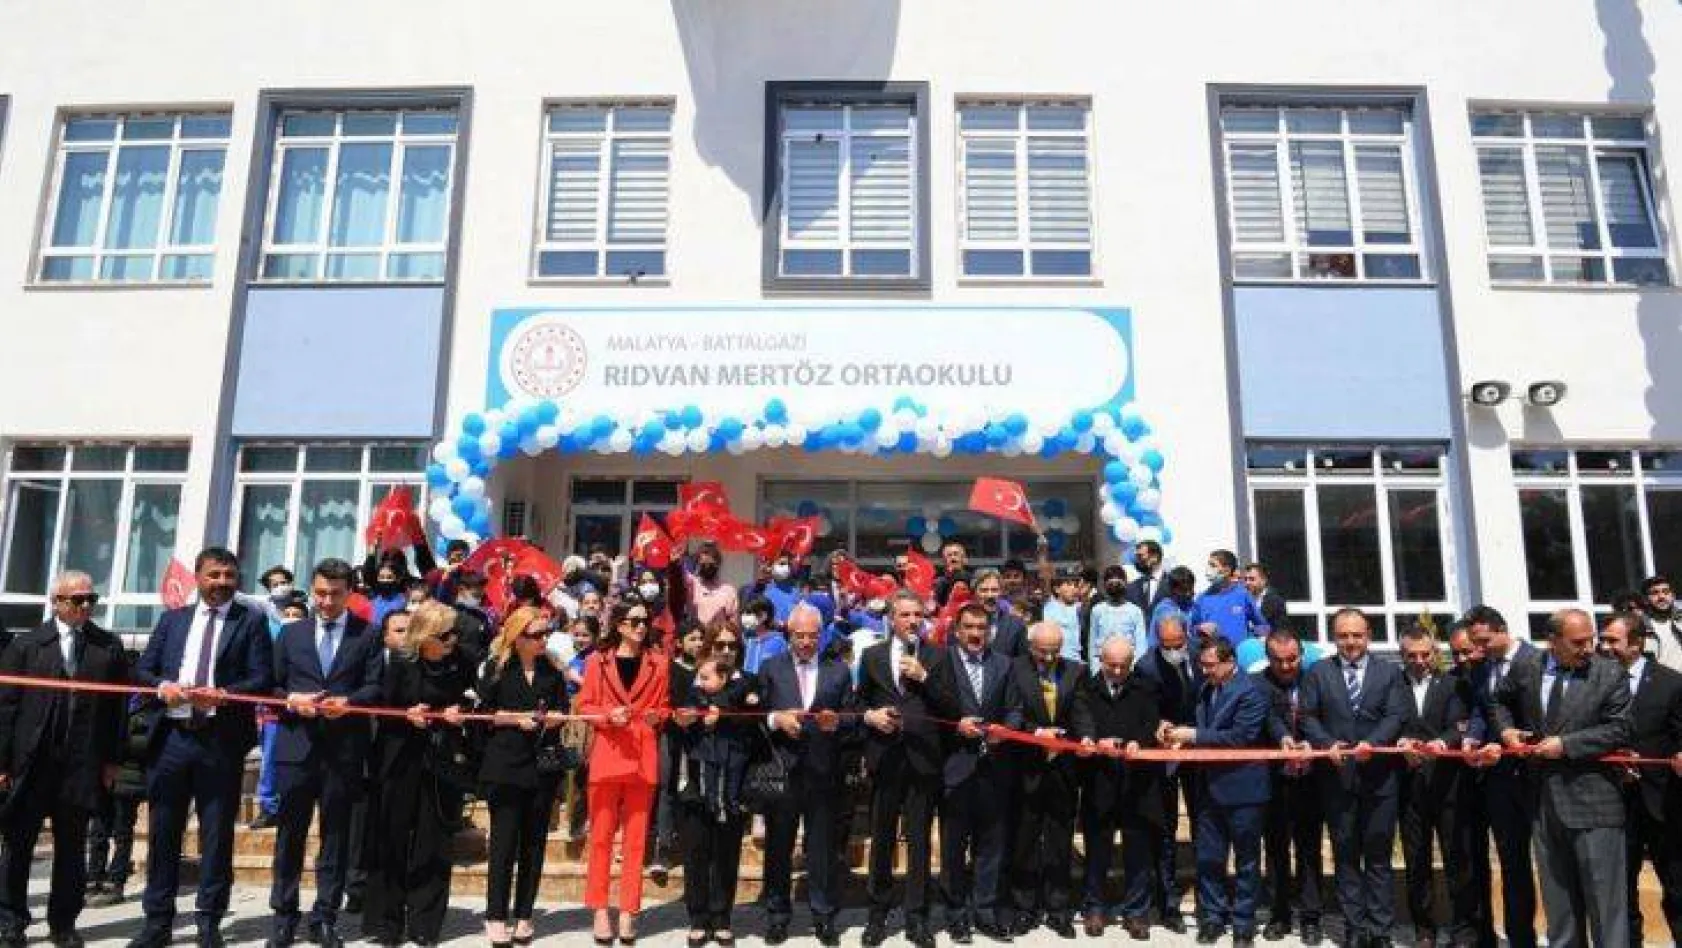 Rıdvan Mertöz Ortaokulu Malatya'da açıldı